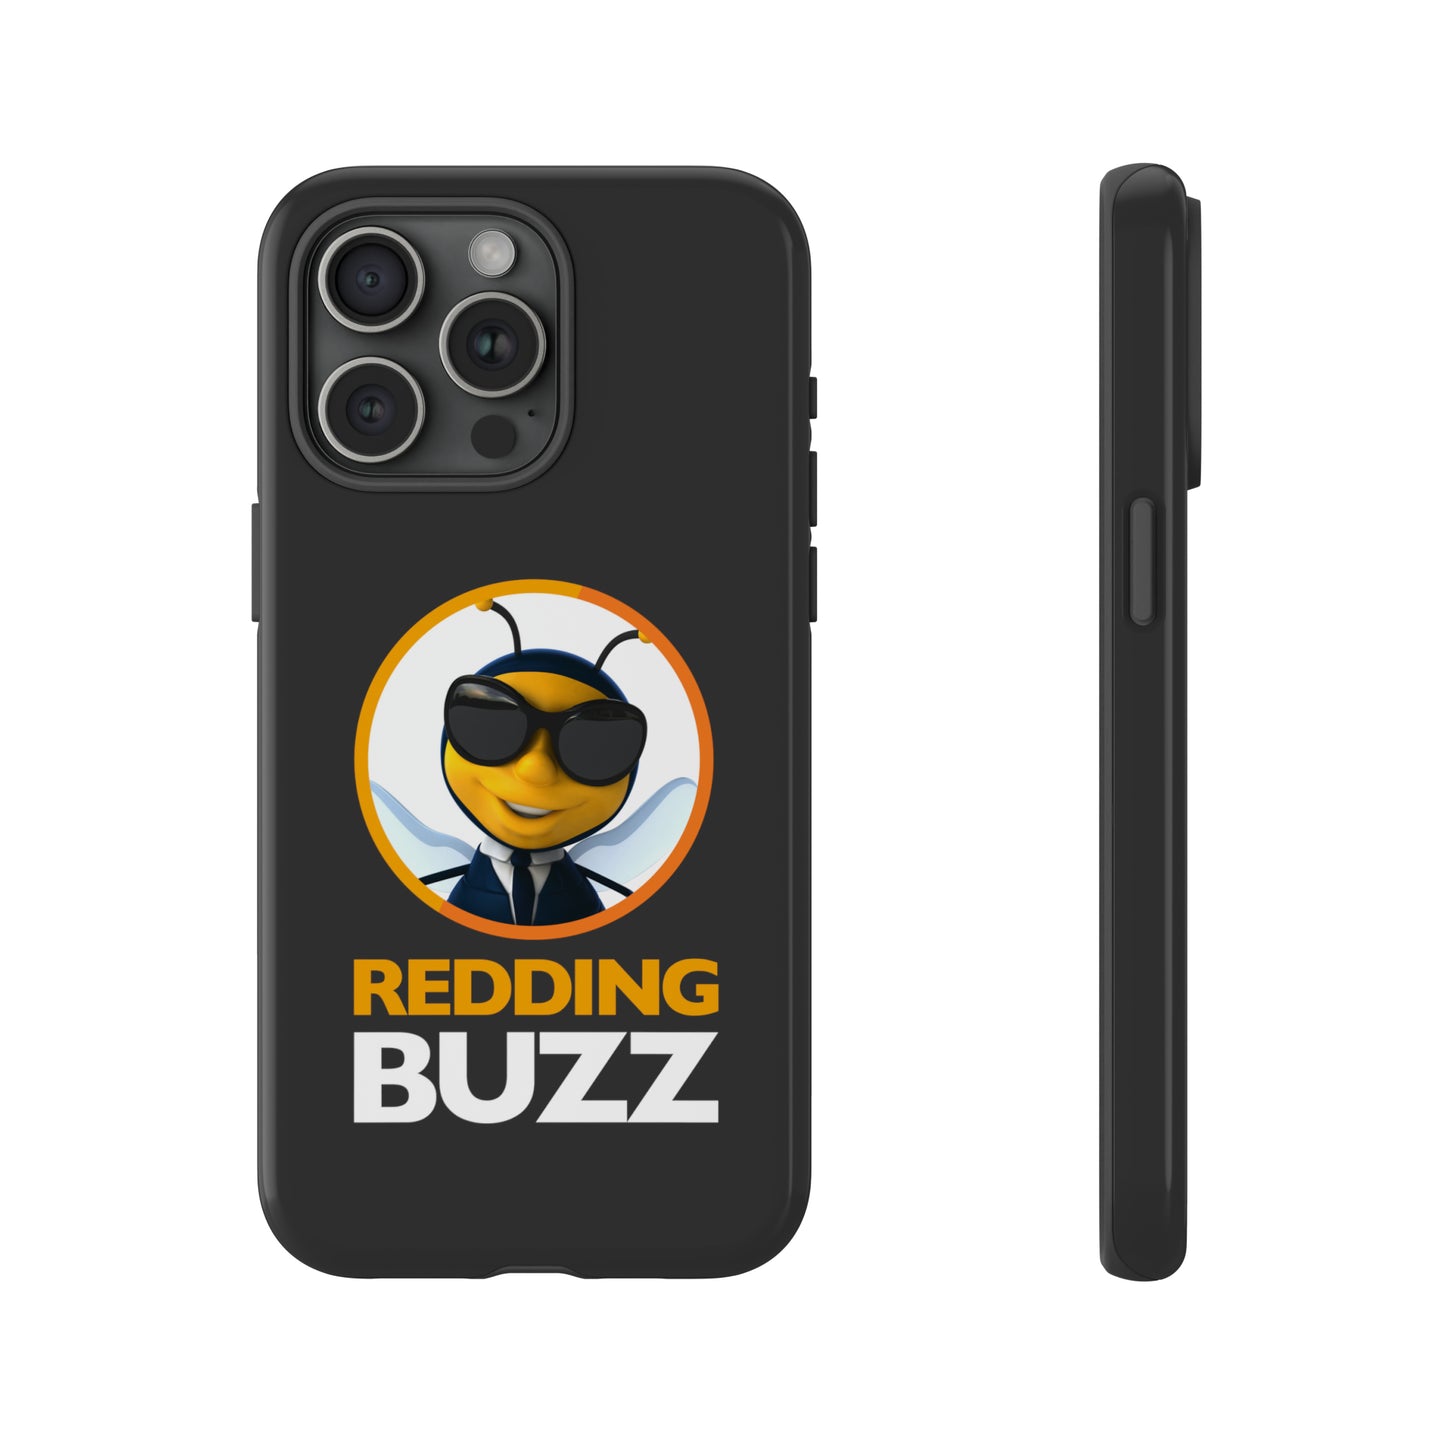 Hive Guard Tough Case: Redding Buzz Protective Phone Case